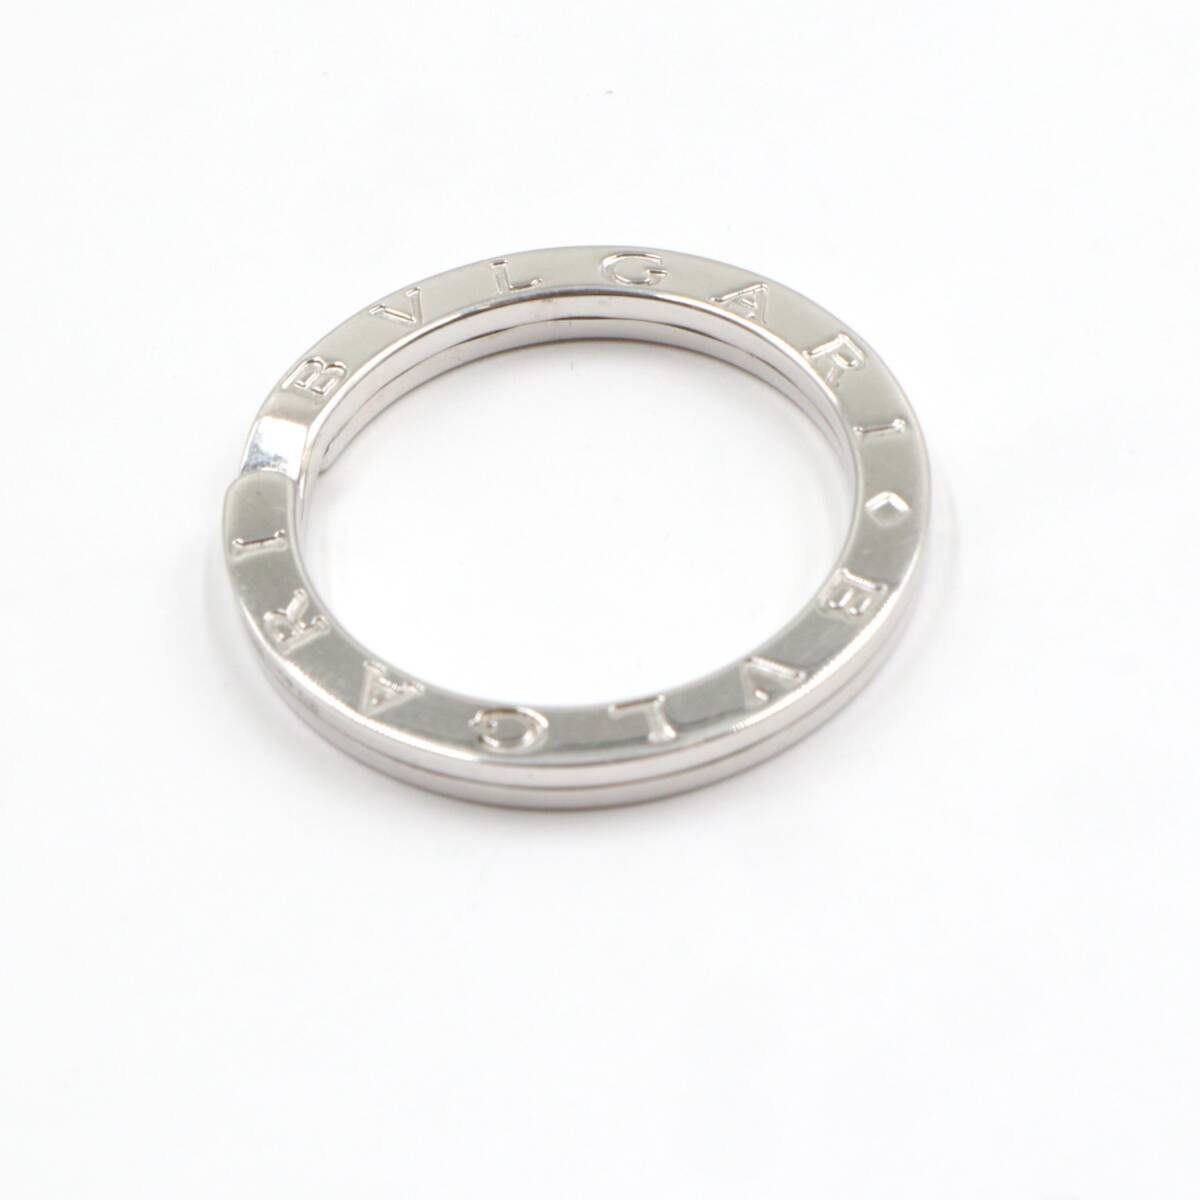 *[ отполирован ]BVLGARI BVLGARY BVLGARY SV925 кольцо для ключей подвеска с цепью колье верх женский мужской оттенок серебра 